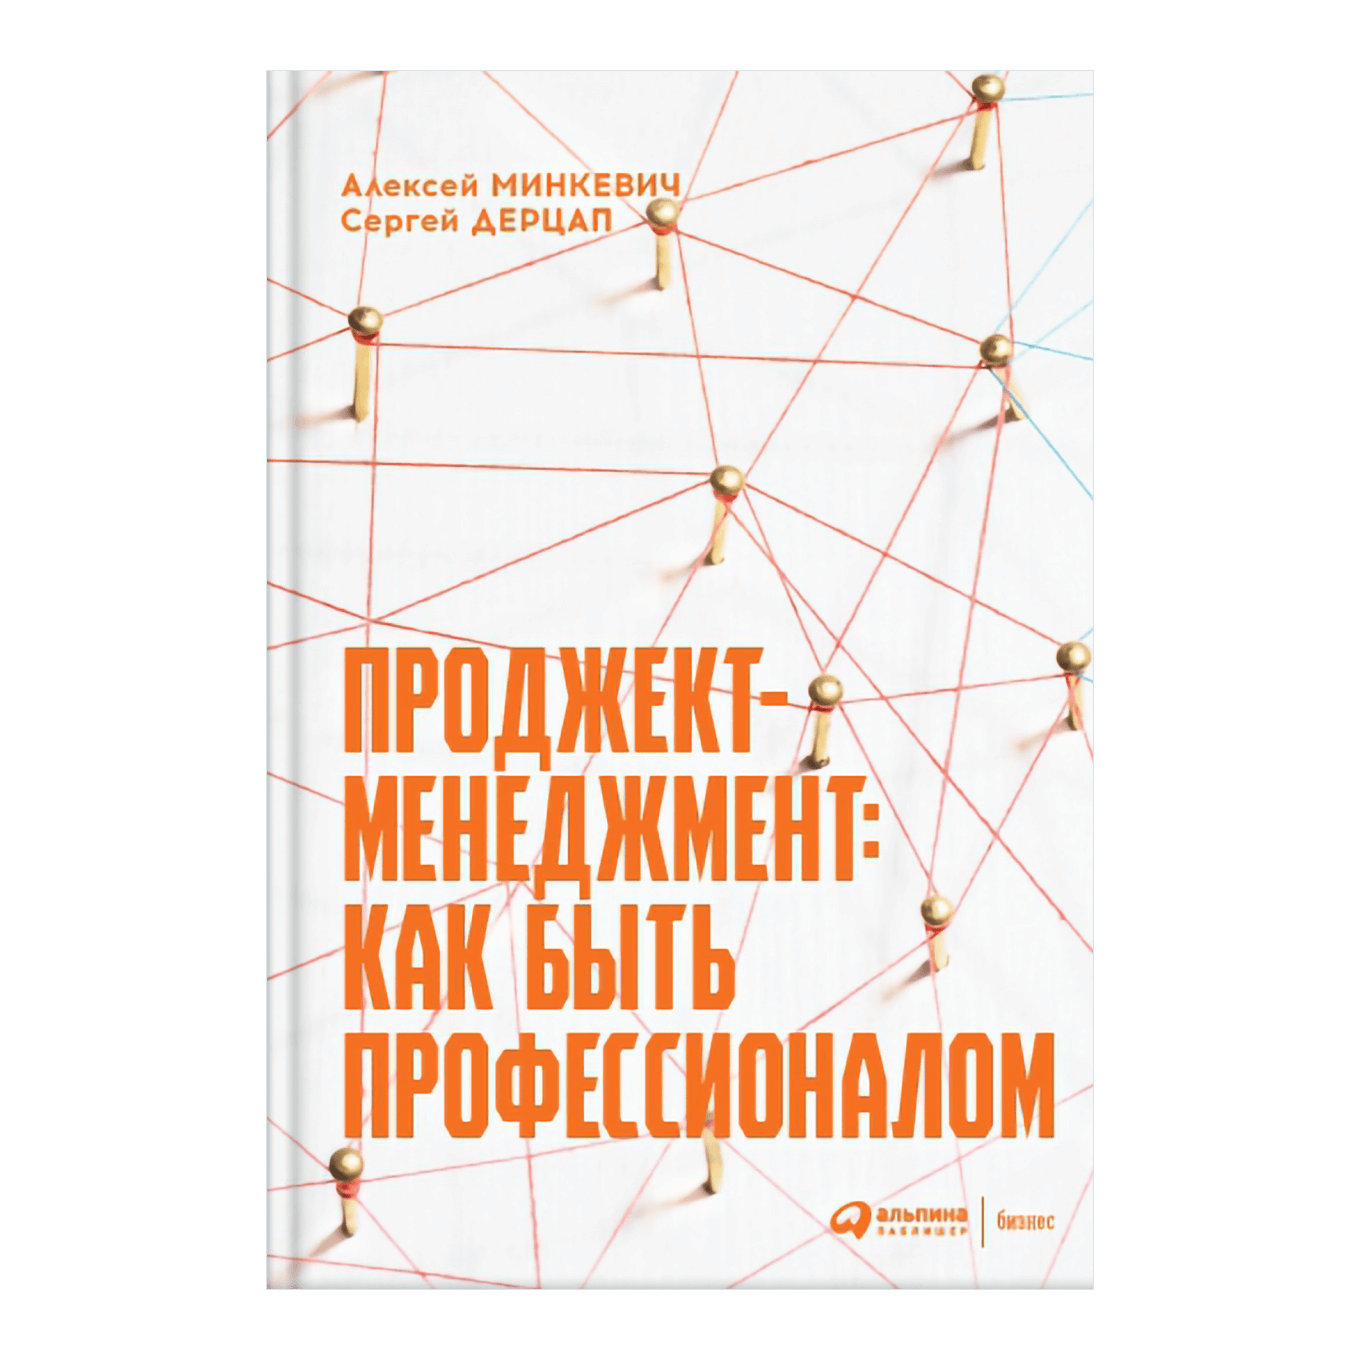 Книга Алексея Минкевича и Сергея Дерцапа «Проджект-менеджмент»